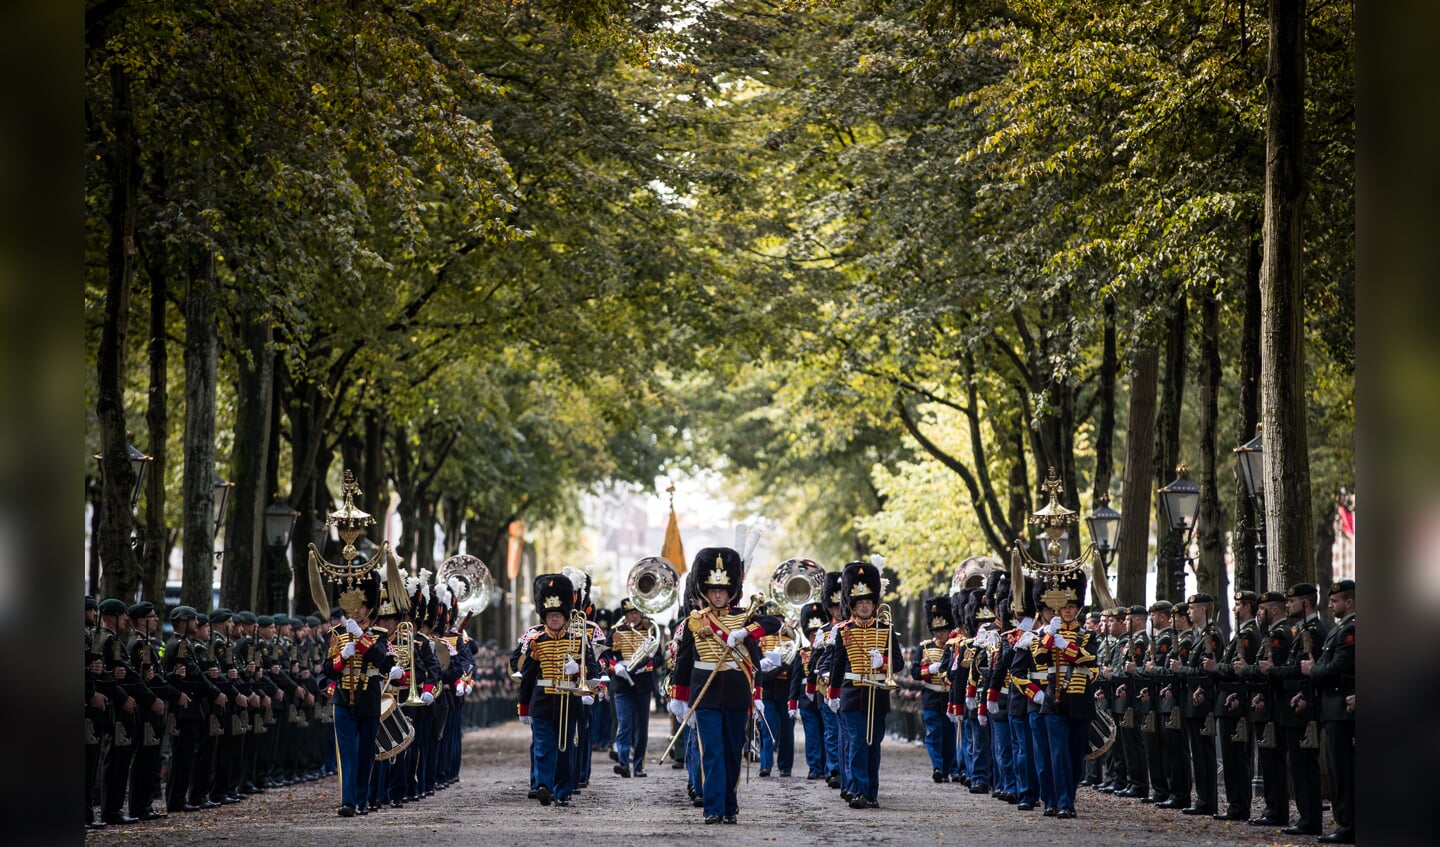 Erewacht en militair ceremonieel prinsjesdag met Koninklijke Militaire Kapel ‘Johan Willem Friso’. Foto: sgt. Jan Dijkstra/Mediacentrum Defensie